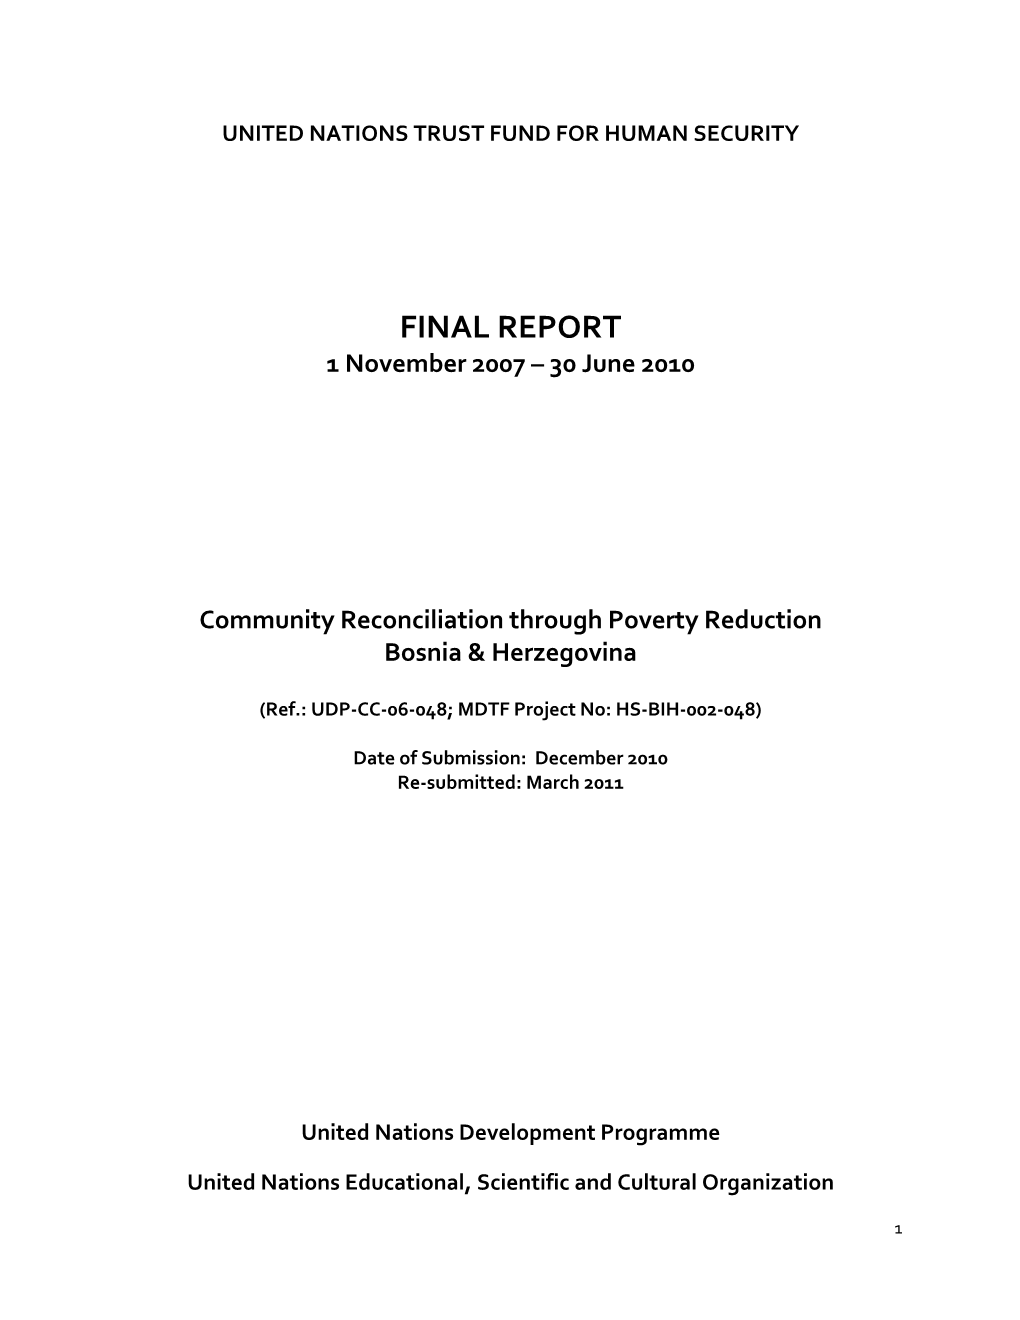 FINAL REPORT 1 November 2007 – 30 June 2010